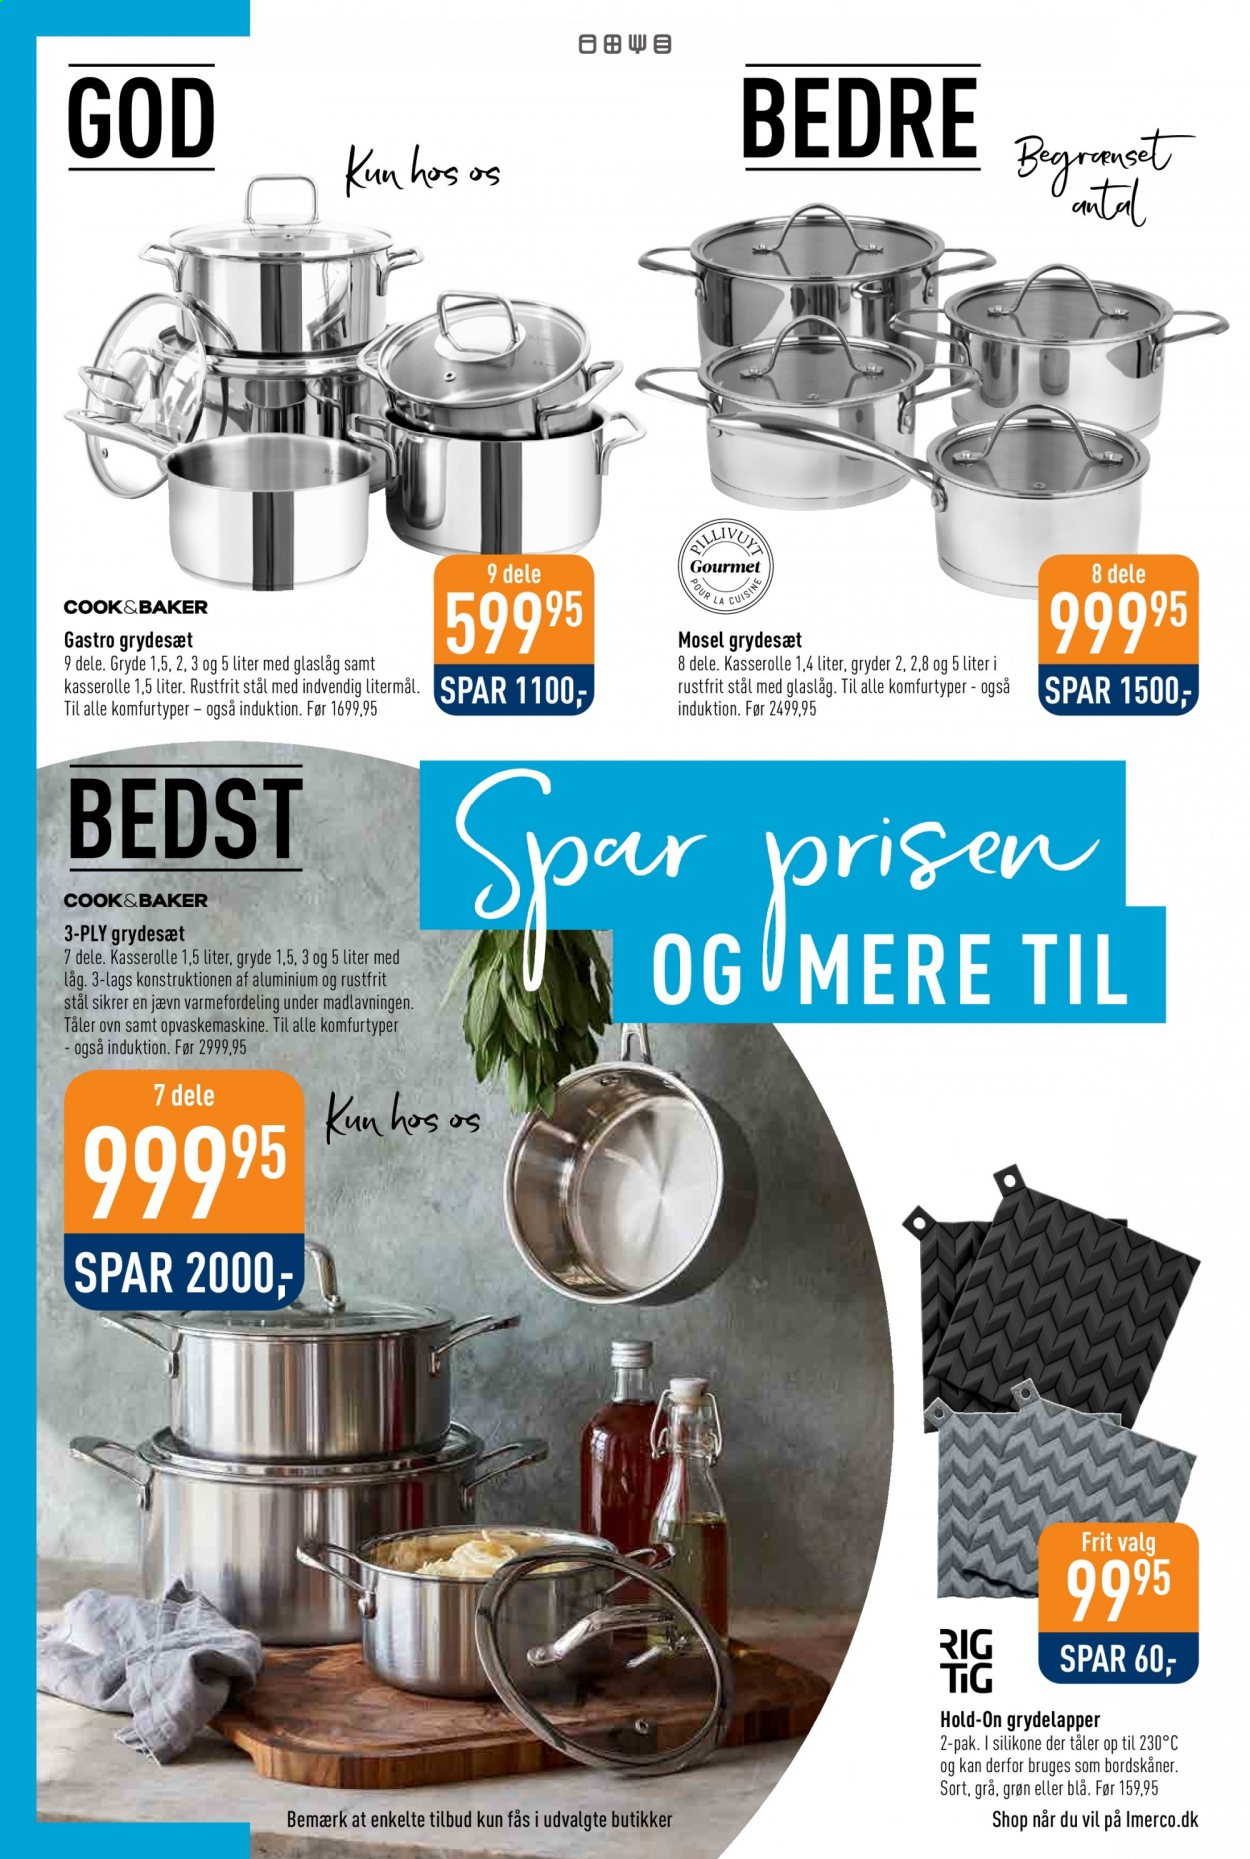 thumbnail - Imerco tilbud  - 5.3.2021 - 21.3.2021 - tilbudsprodukter - glaslåg, gryde, kasserolle, opvaskemaskine. Side 2.